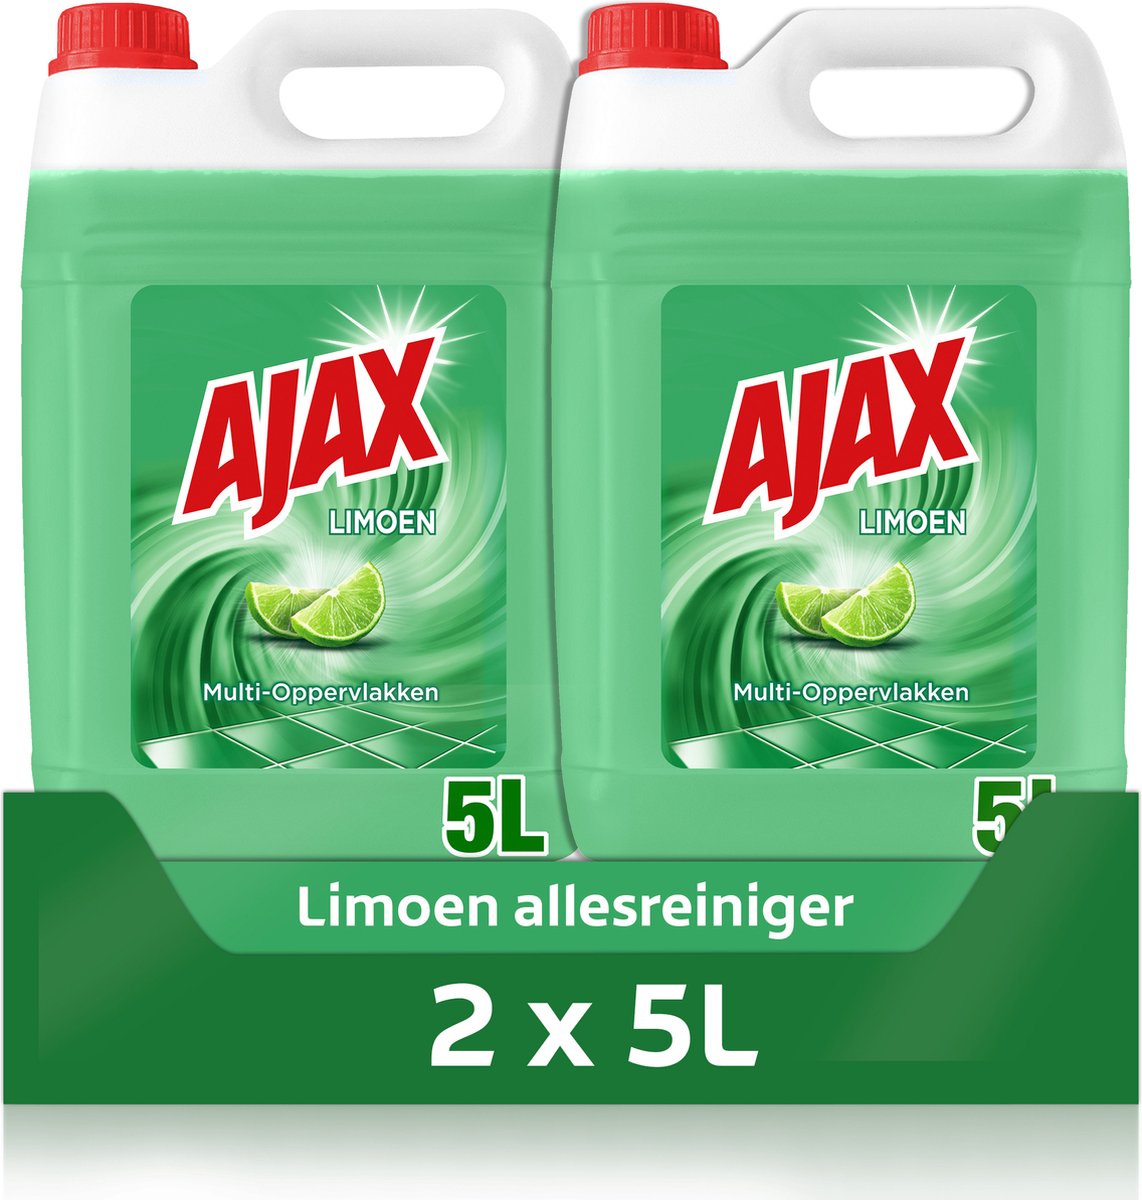 Ajax Nettoyant universel frais (1000ml) acheter à prix réduit